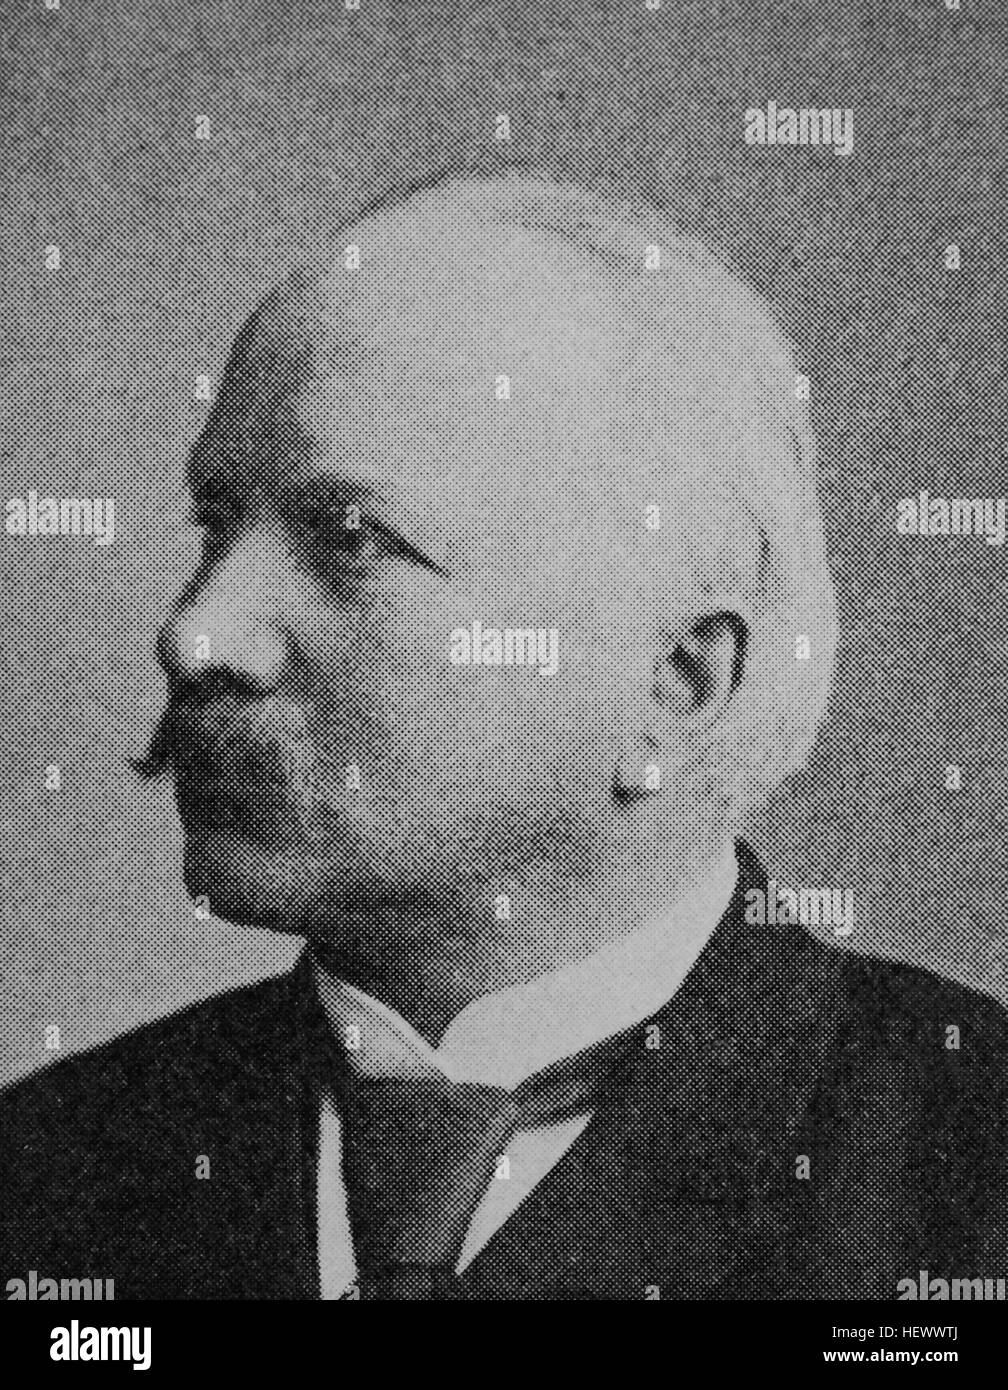 Enno Friedrich Wichard Ulrich von Wilamowitz-Moellendorff, 22 Dicembre 1848 - 25 settembre 1931, è stato un classico tedesco filologo, immagine dal 1895, digitale migliorata Foto Stock